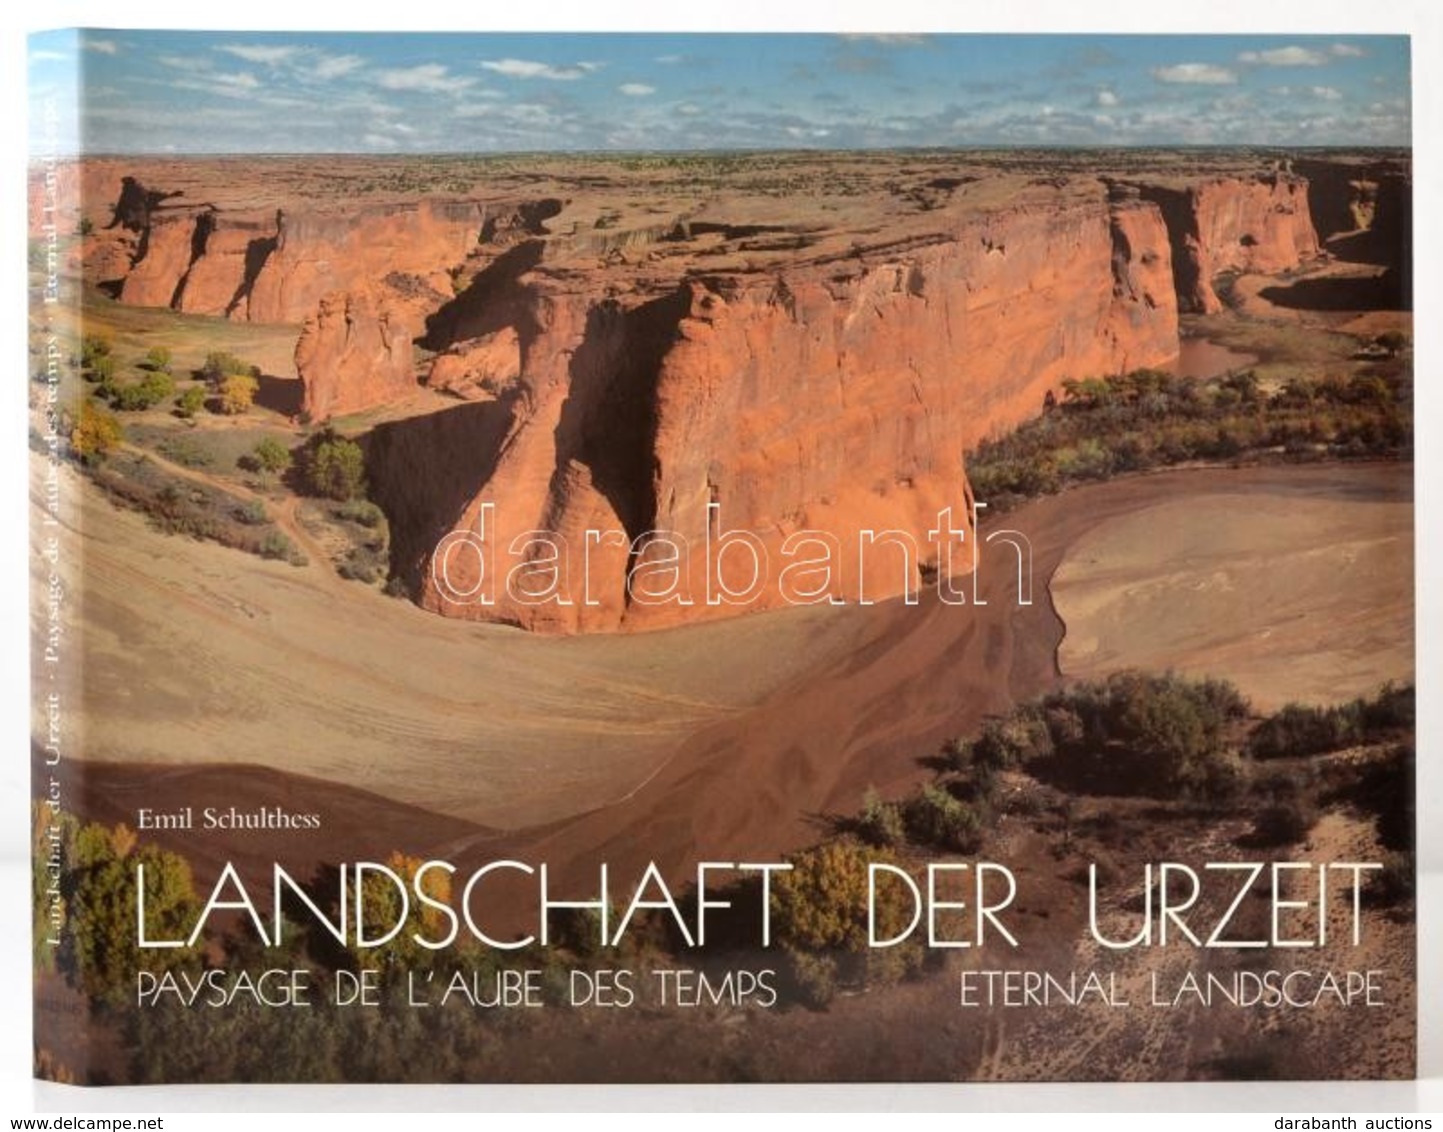 Emil Schulthess-Sigmund Widmer: Landschaft Der Urzeit. Paysage De L'Aube Des Temps. Eternal Landscape. Zürich, 1989, Art - Ohne Zuordnung